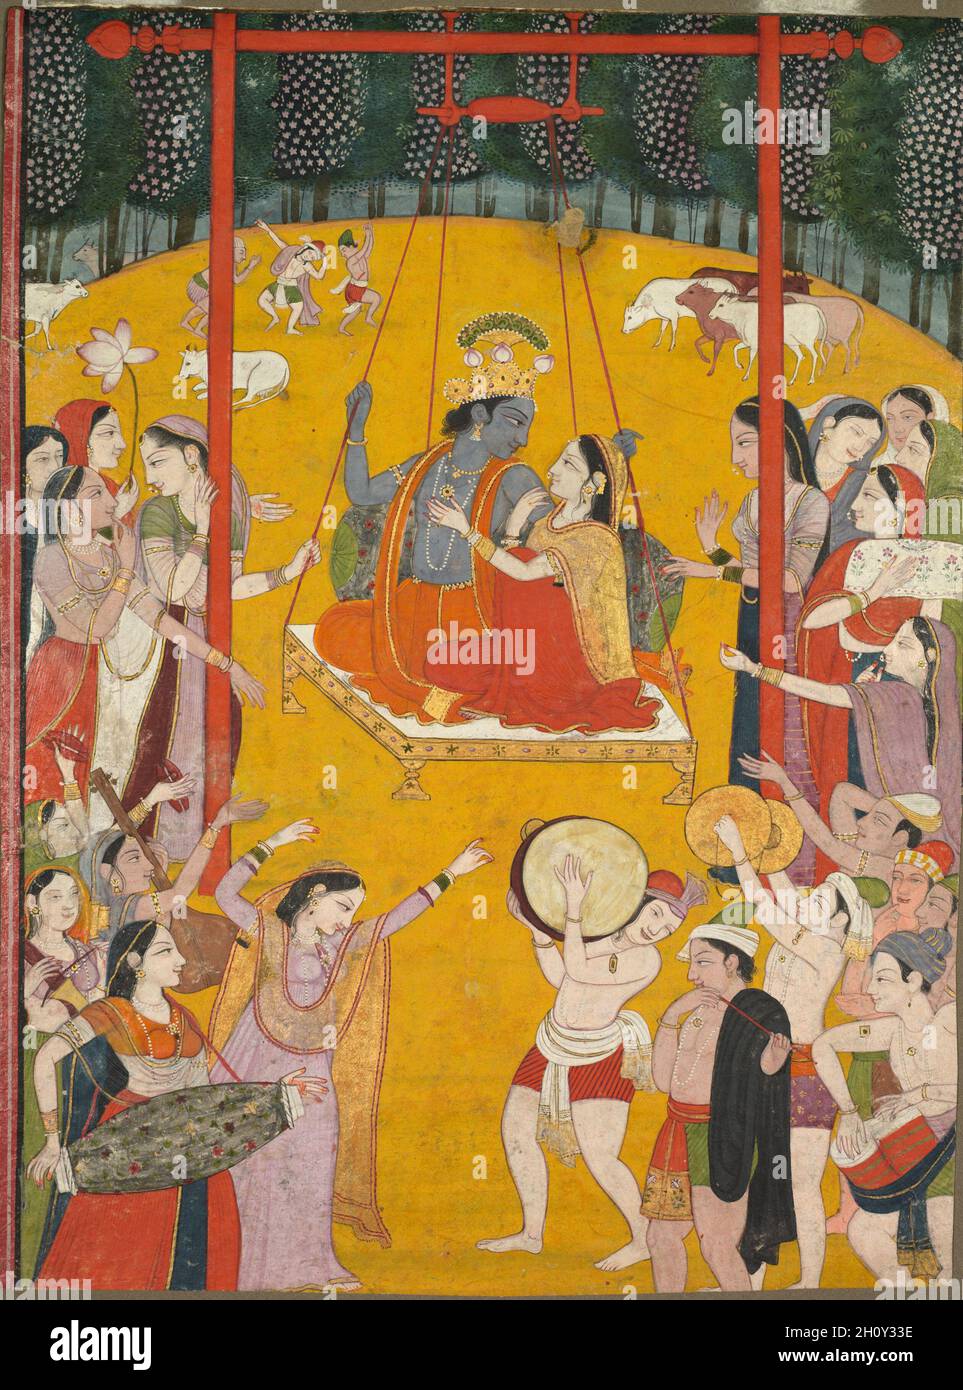 Hindola Raga, c. 1790-1800. La parola hindola significa altalena in  sanscrito e il termine raga indica che questo dipinto da un insieme in cui  ogni opera raffigura una scena destinato ad evocare